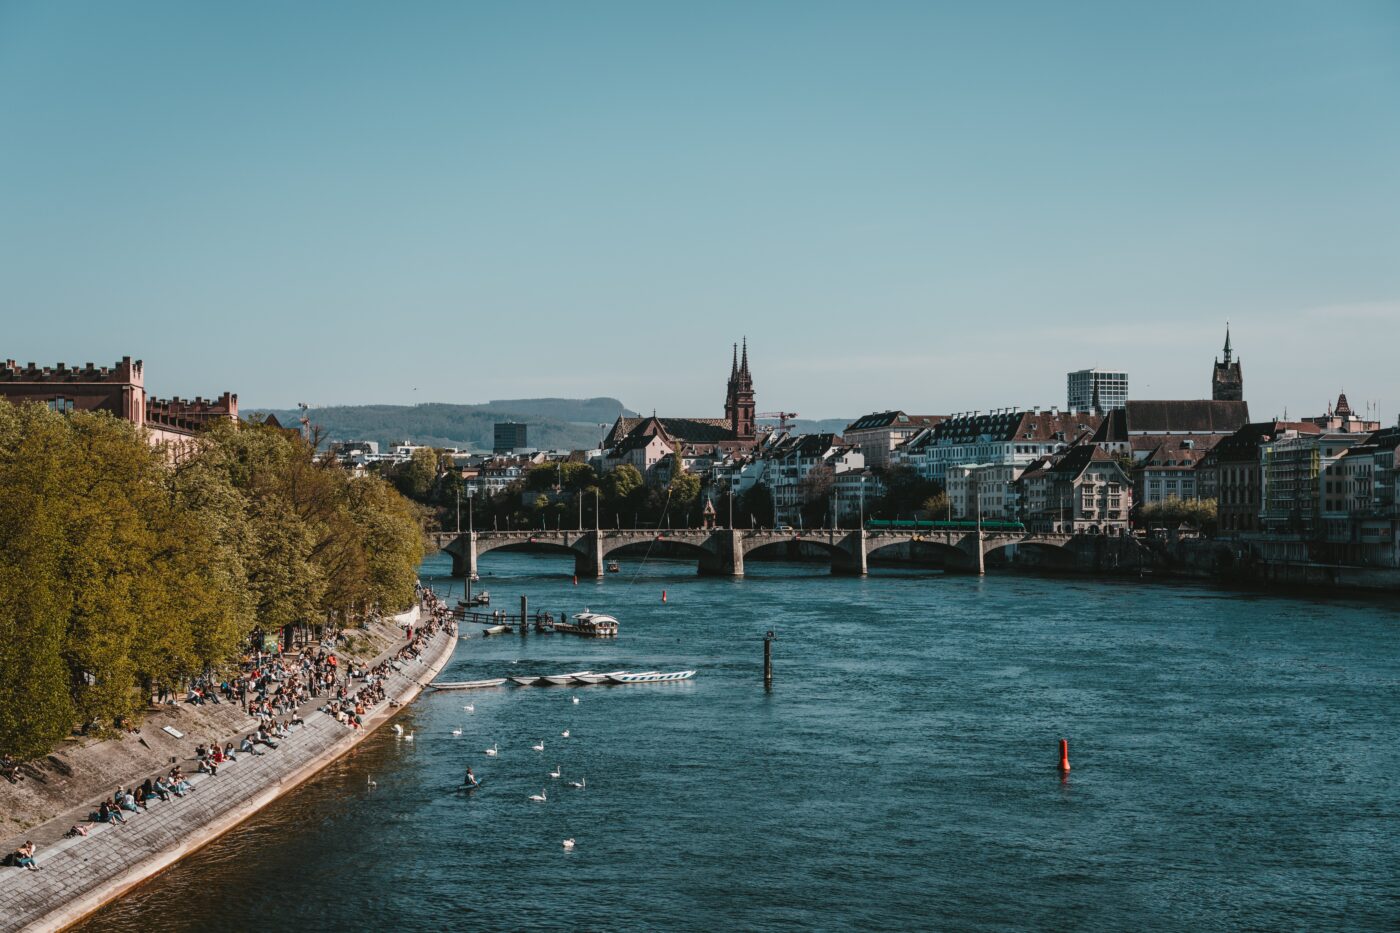 Ausblick über den Rhein. Links sonnen sich die Menschen am Flussufer, rechts sieht man die Basler Altstadt.